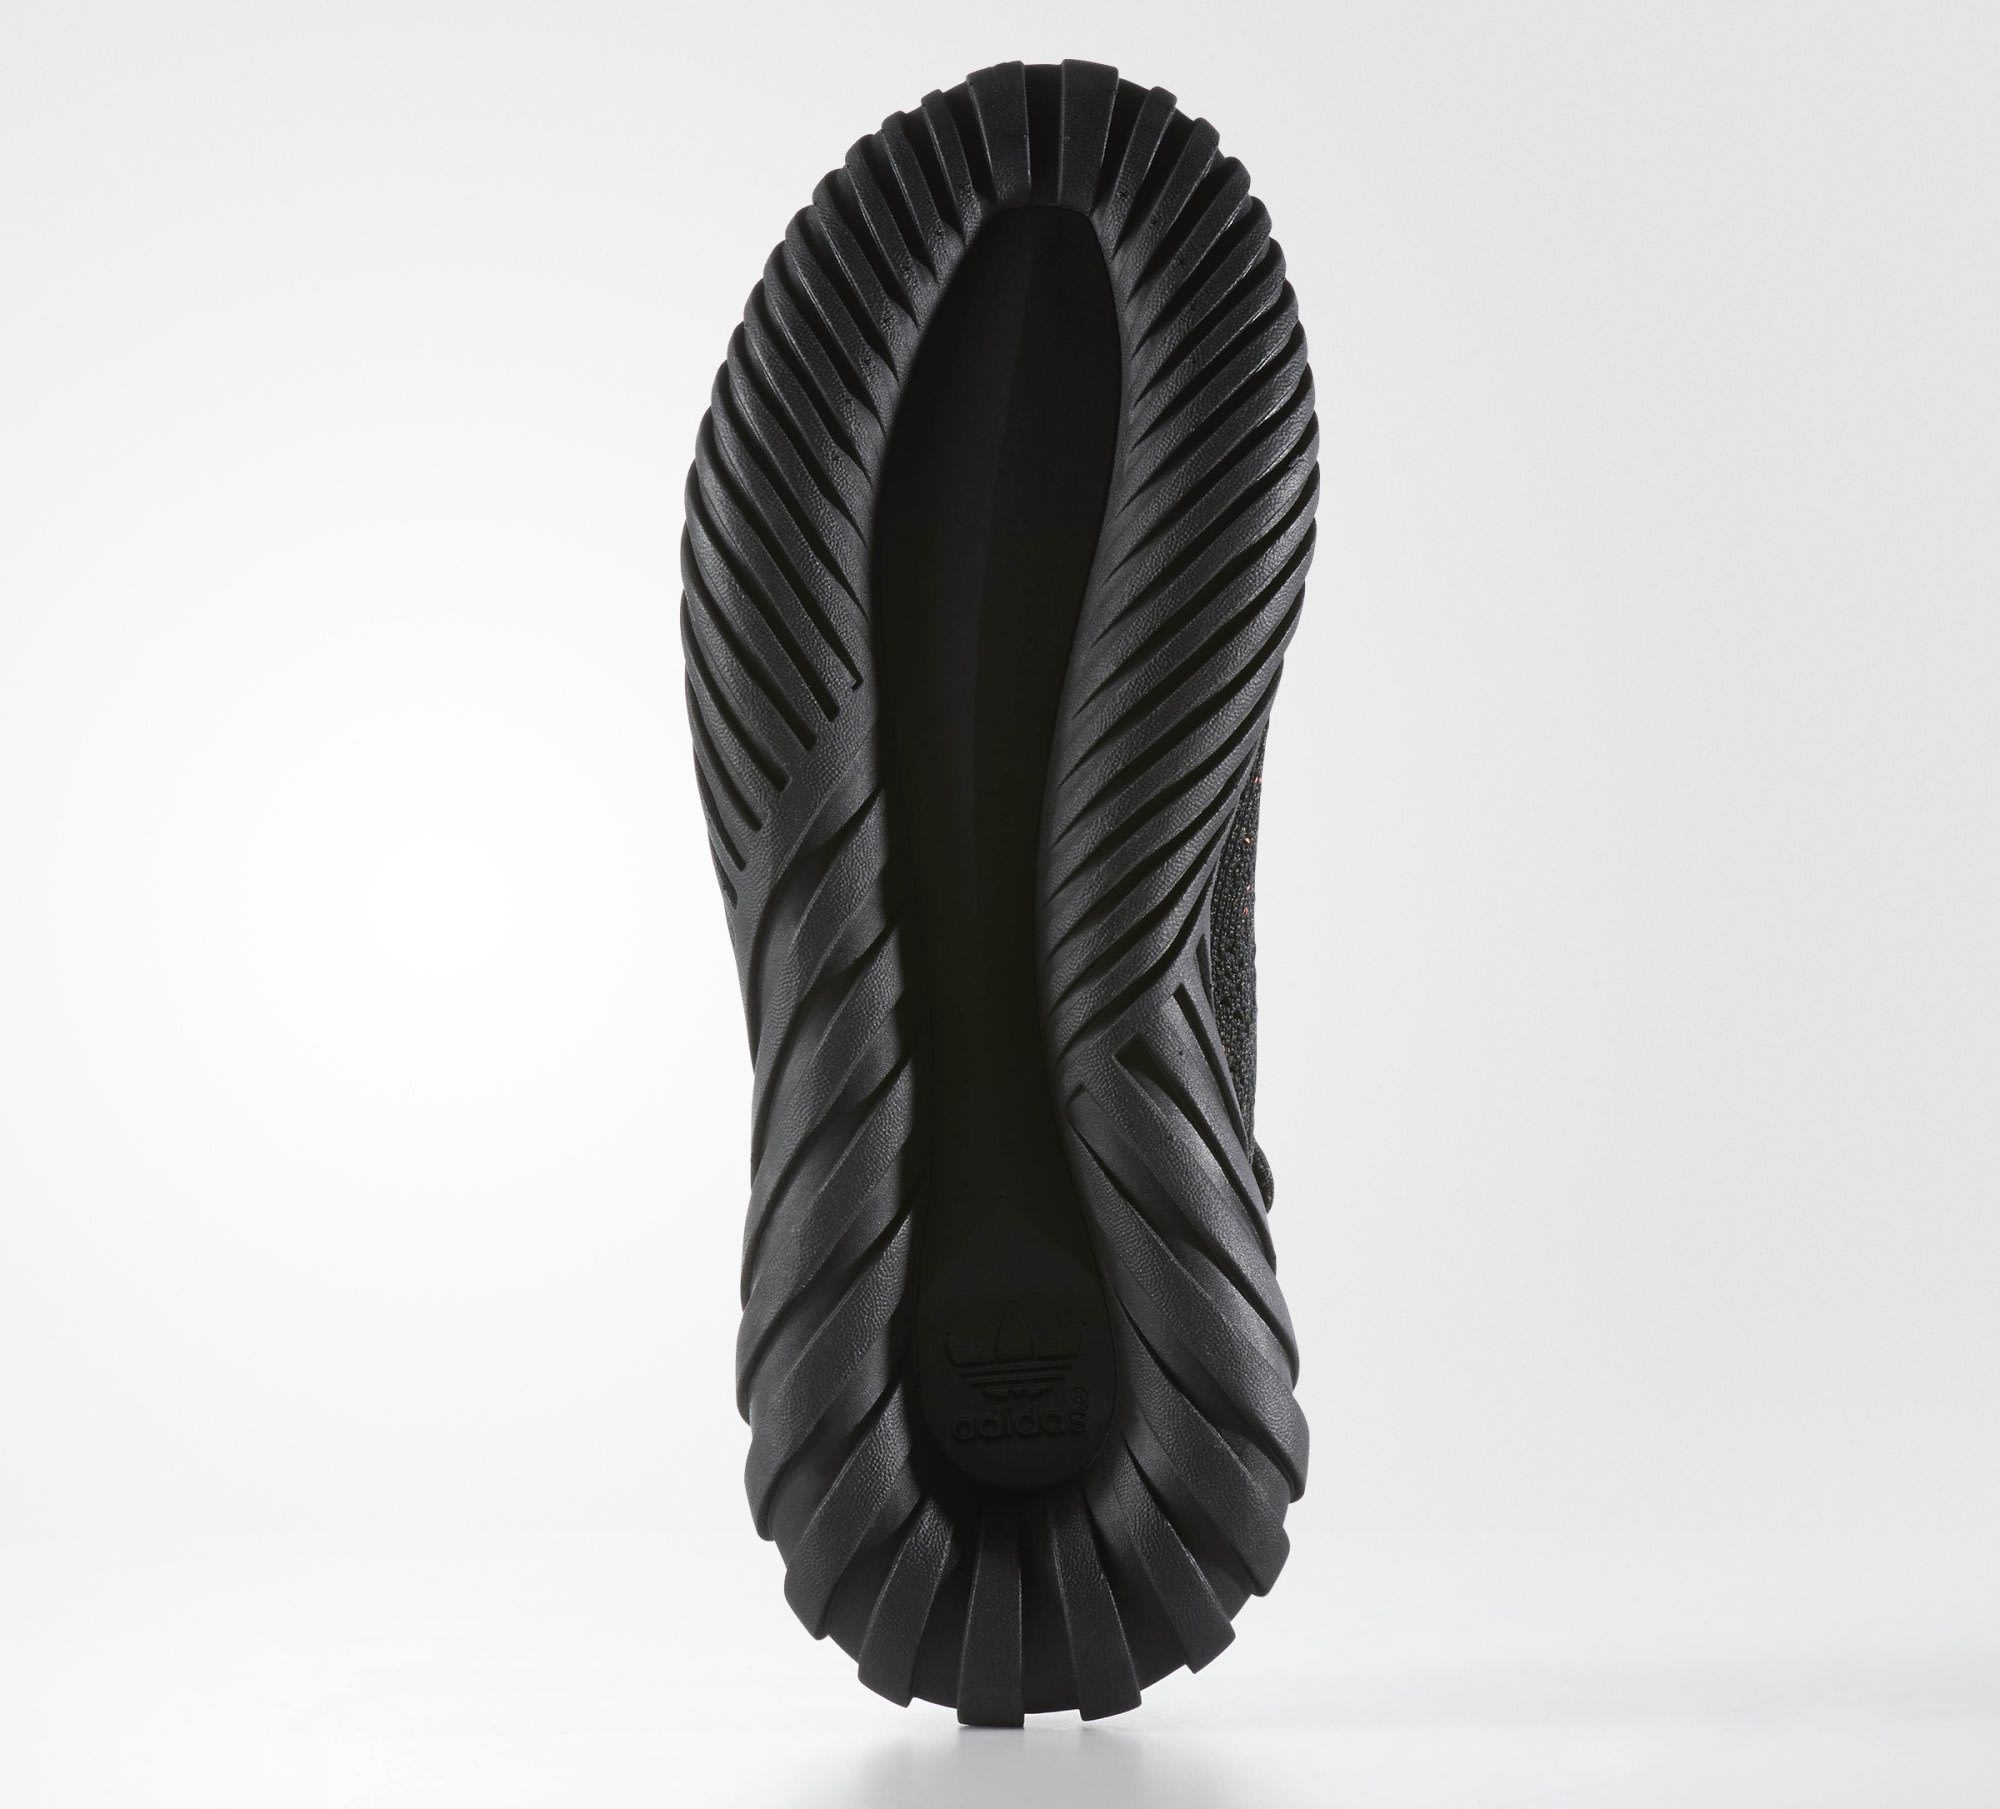 Triple Black Adidas Tubular Doom Soc BY3559 Sole